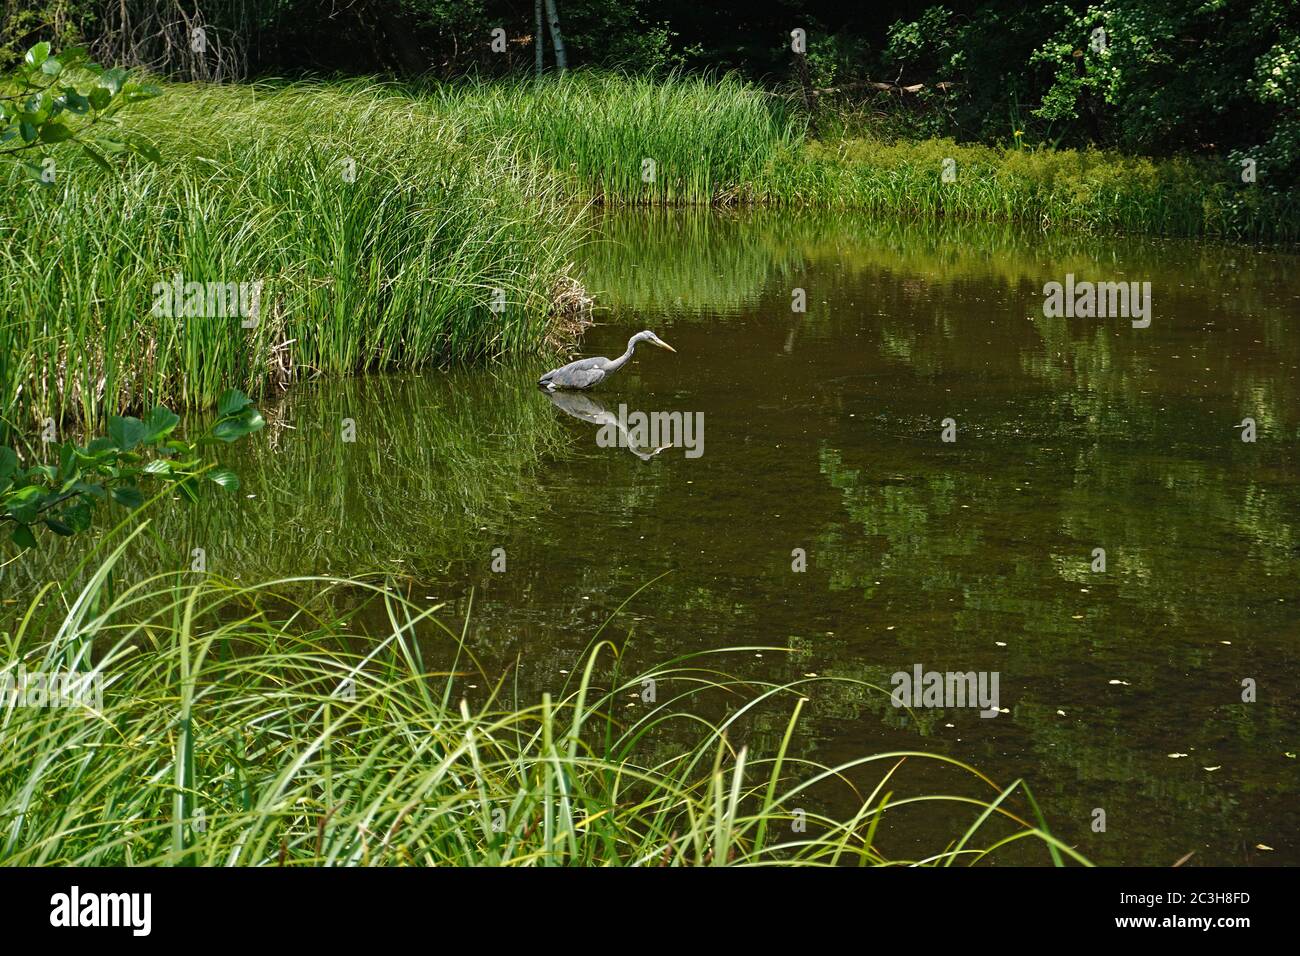 grey heron, gray heron at a pond Stock Photo